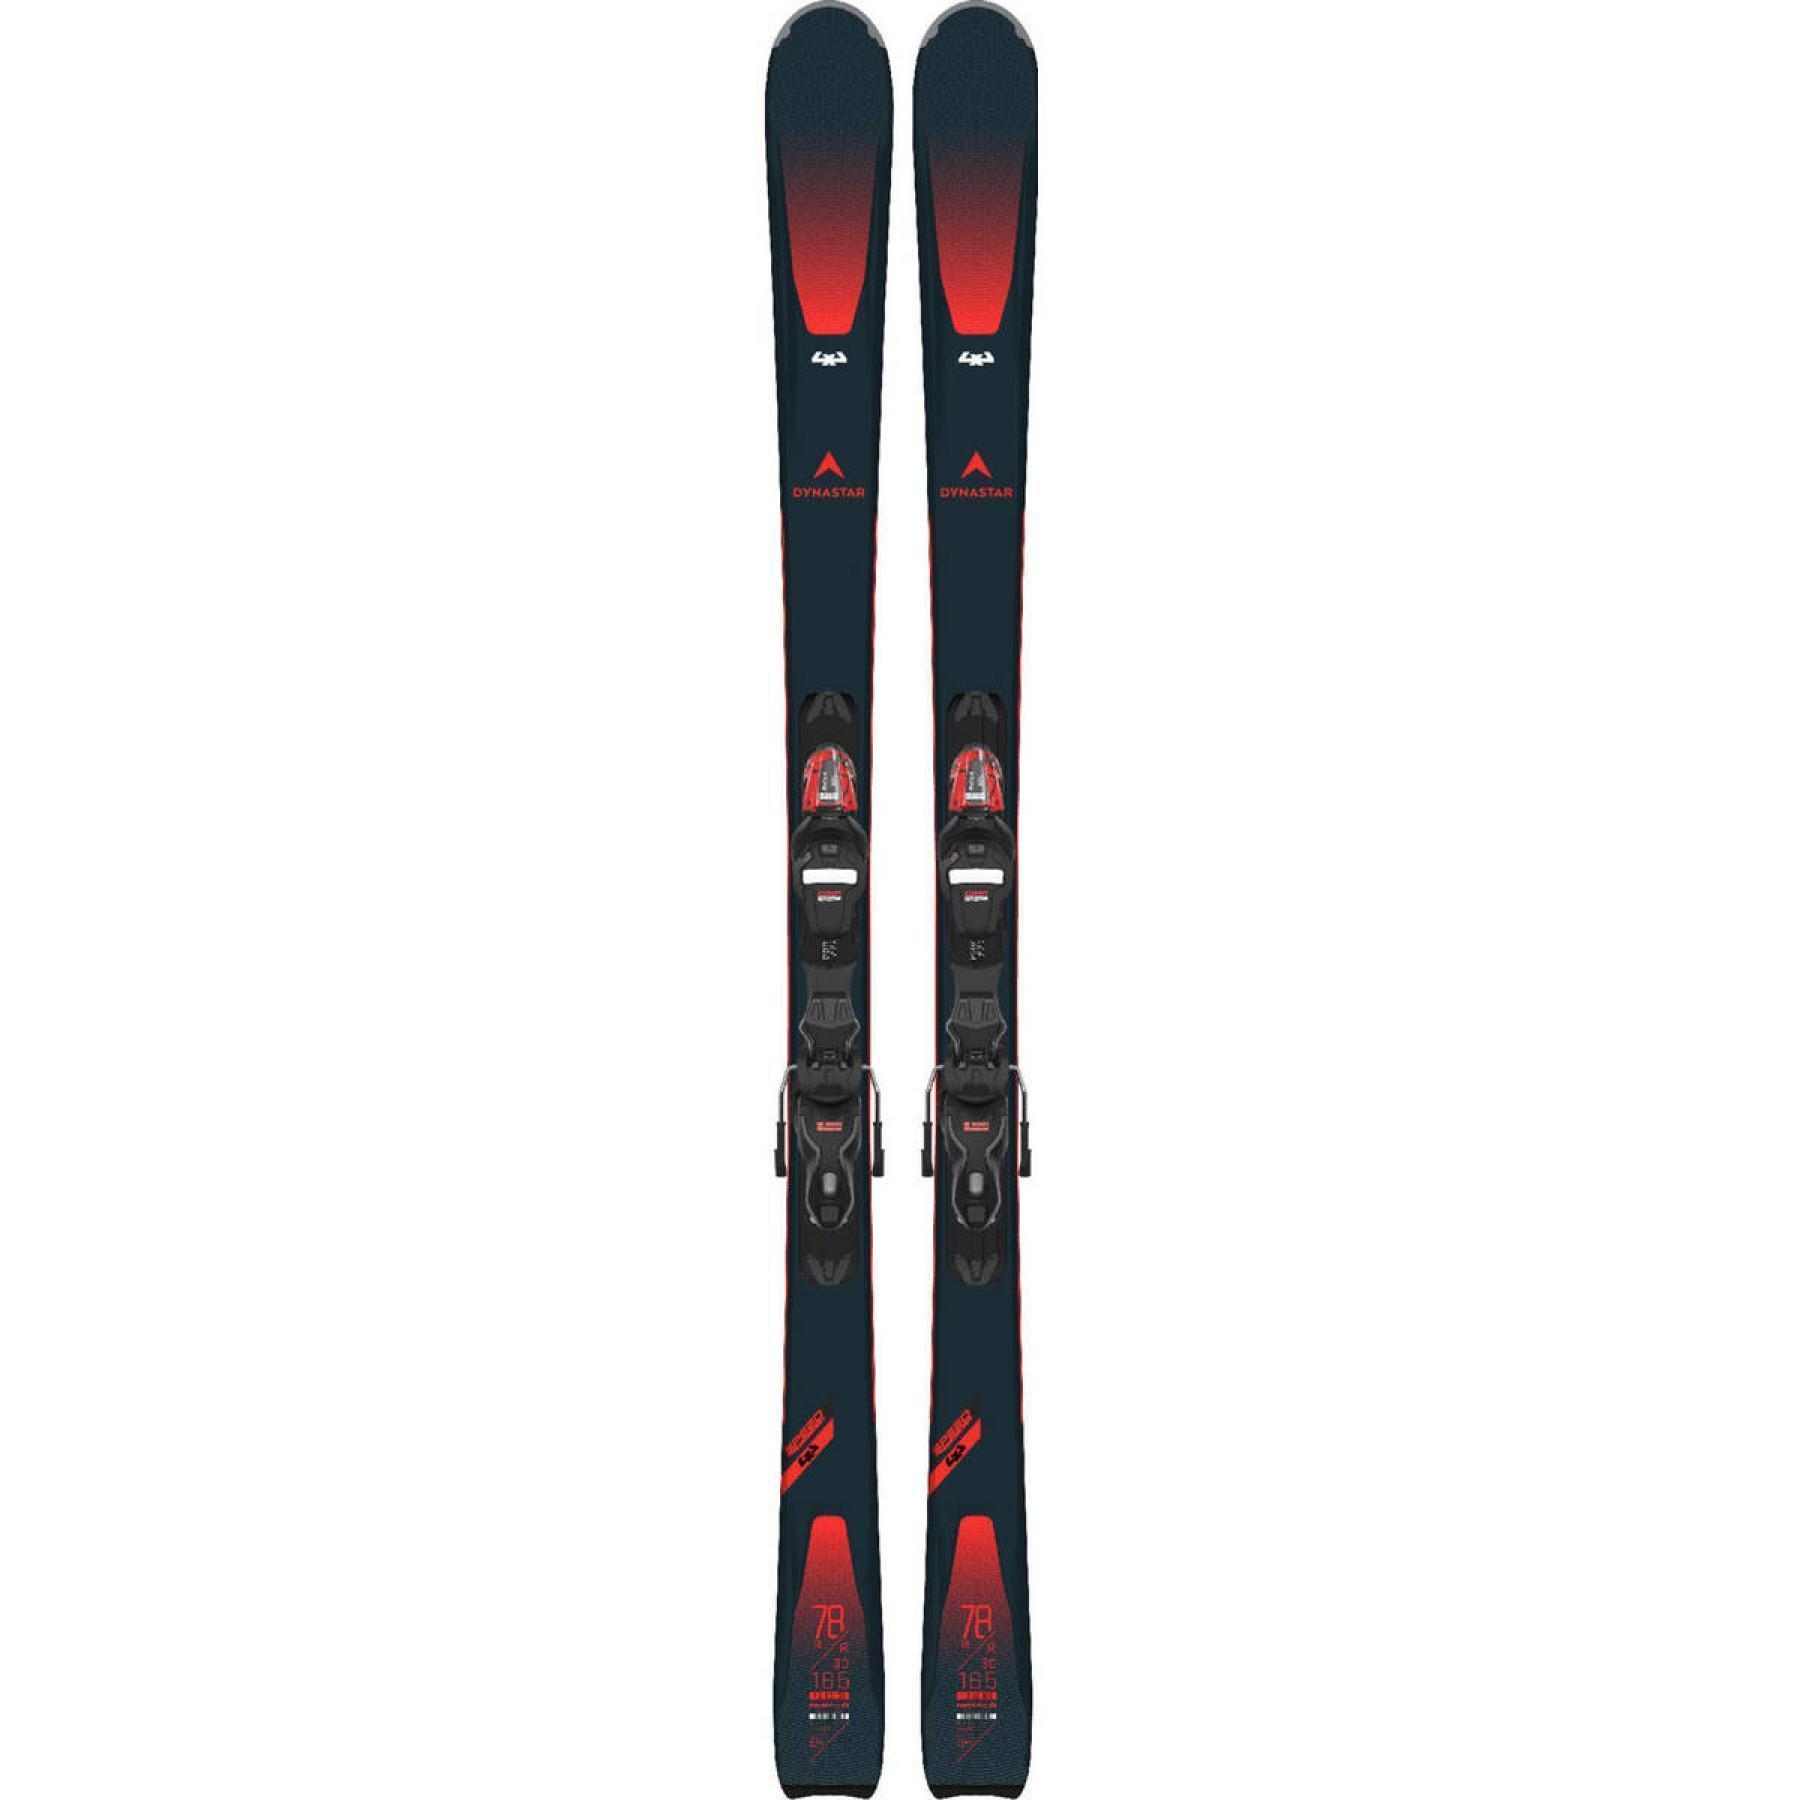 Ski Dynastar speedzone 4x4 78 rtl (ress)